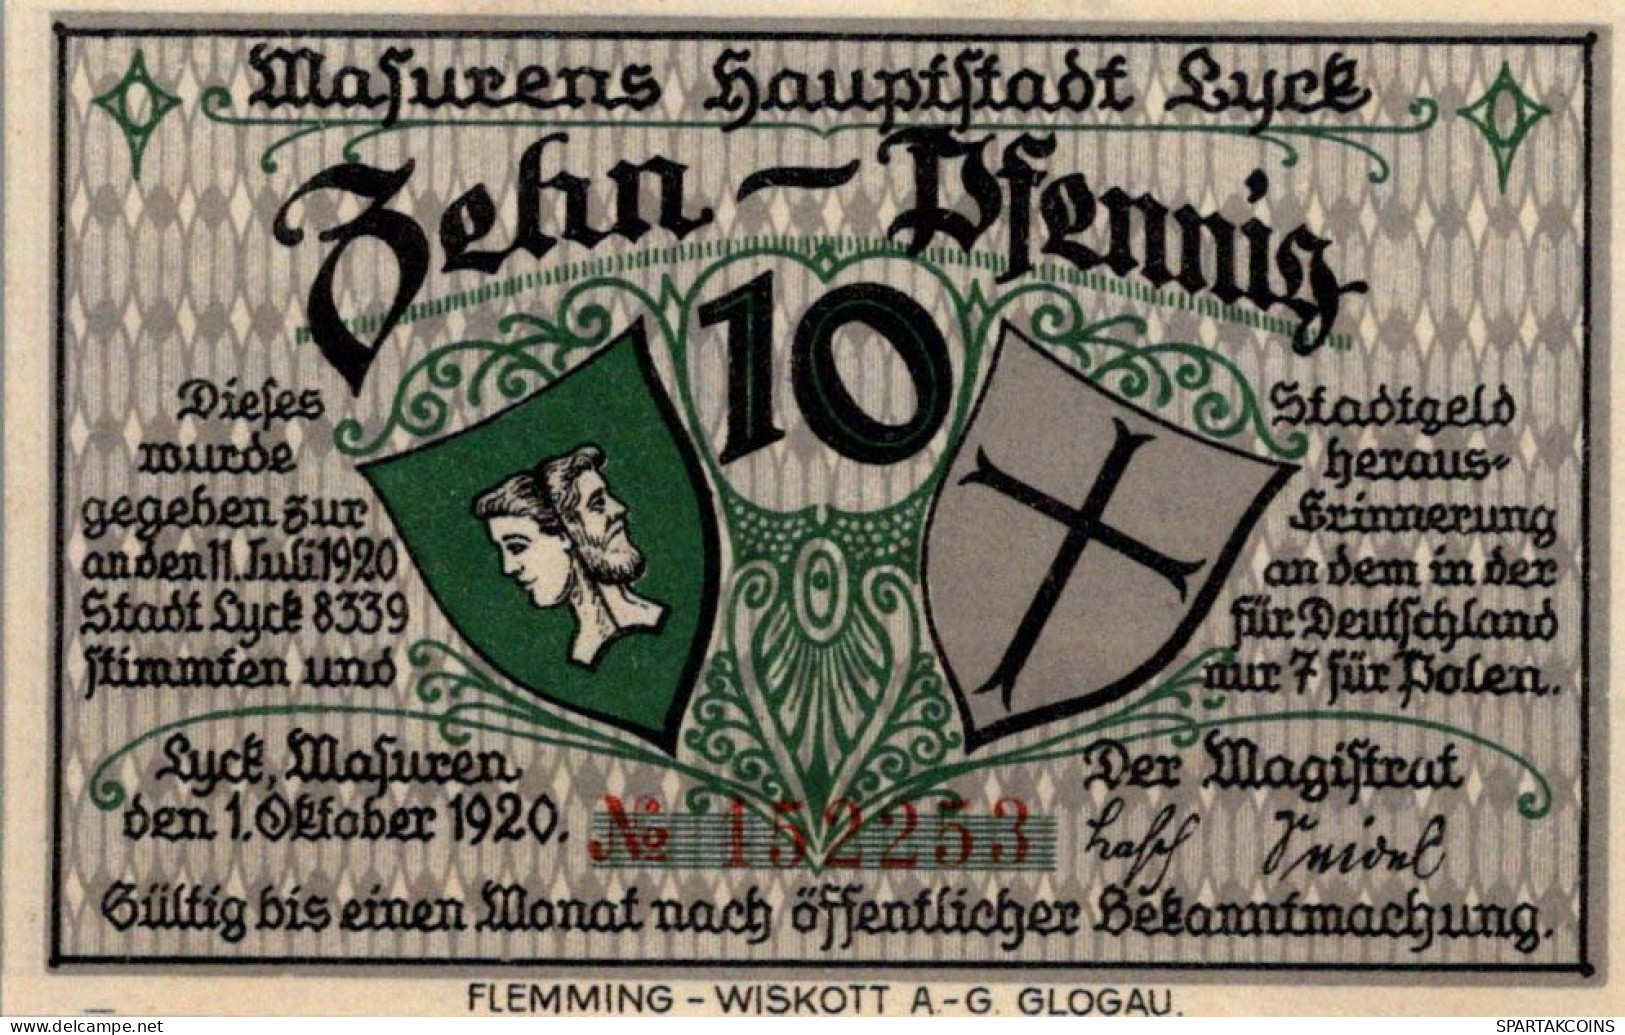 10 PFENNIG 1920 Stadt LYCK East PRUSSLAND UNC DEUTSCHLAND Notgeld Banknote #PH919 - [11] Emissions Locales